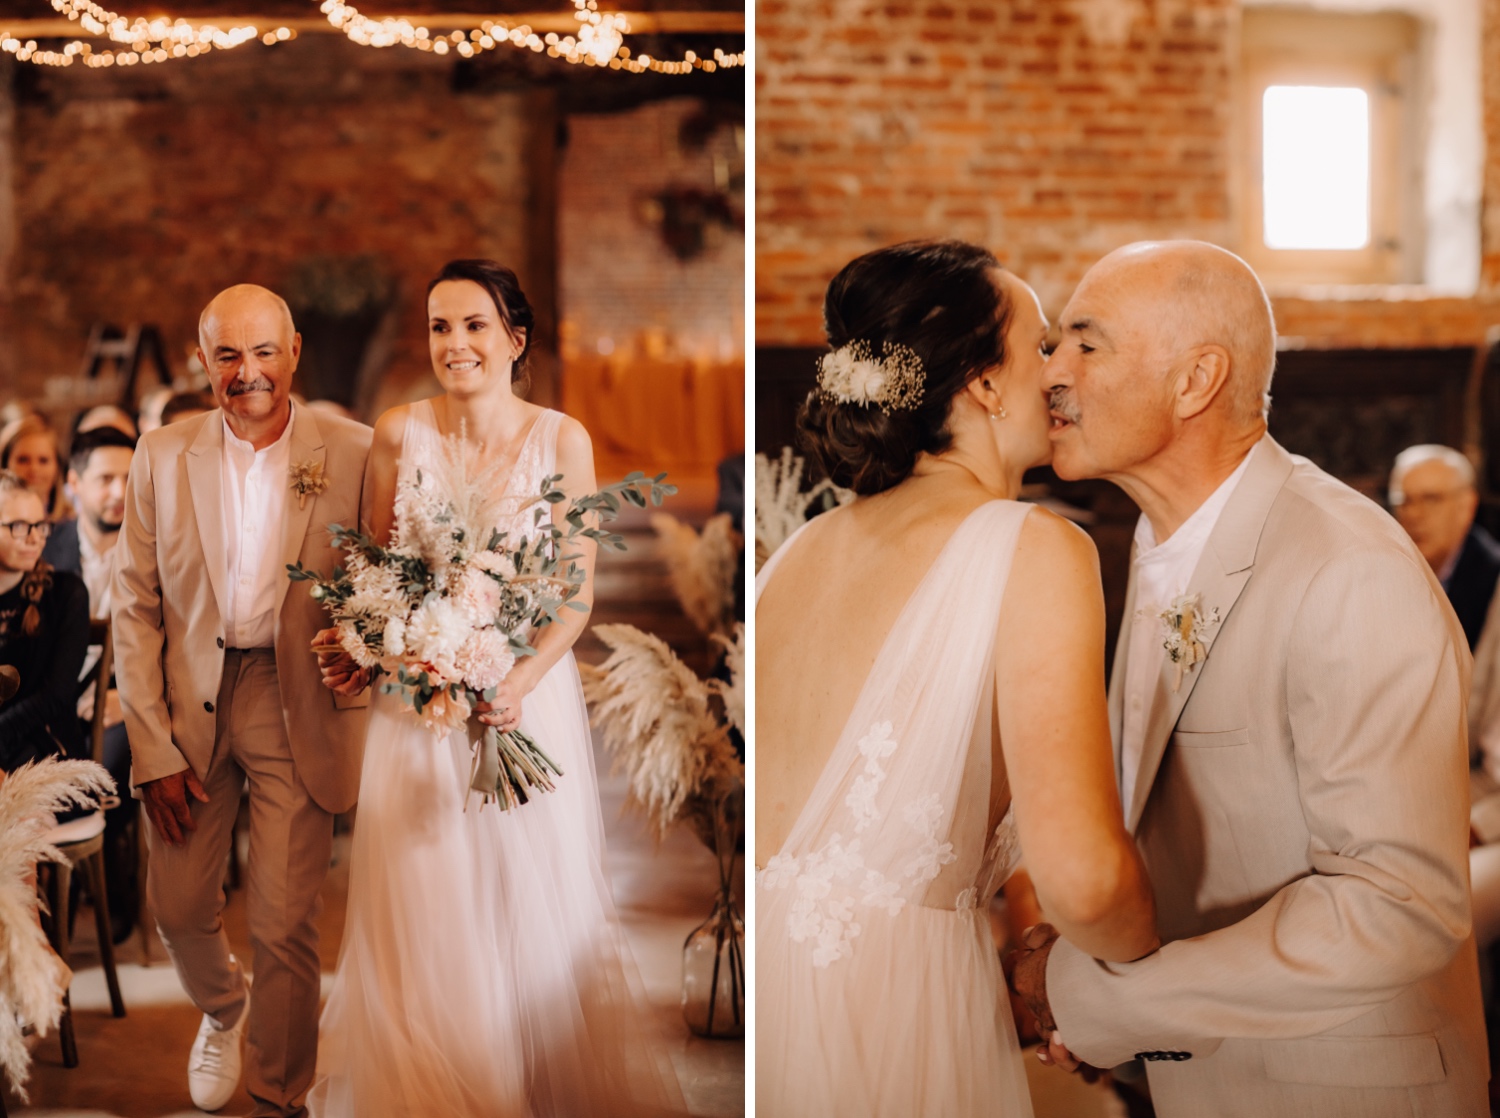 Huwelijksfotograaf Limburg - bruid kust haar vader op de wang